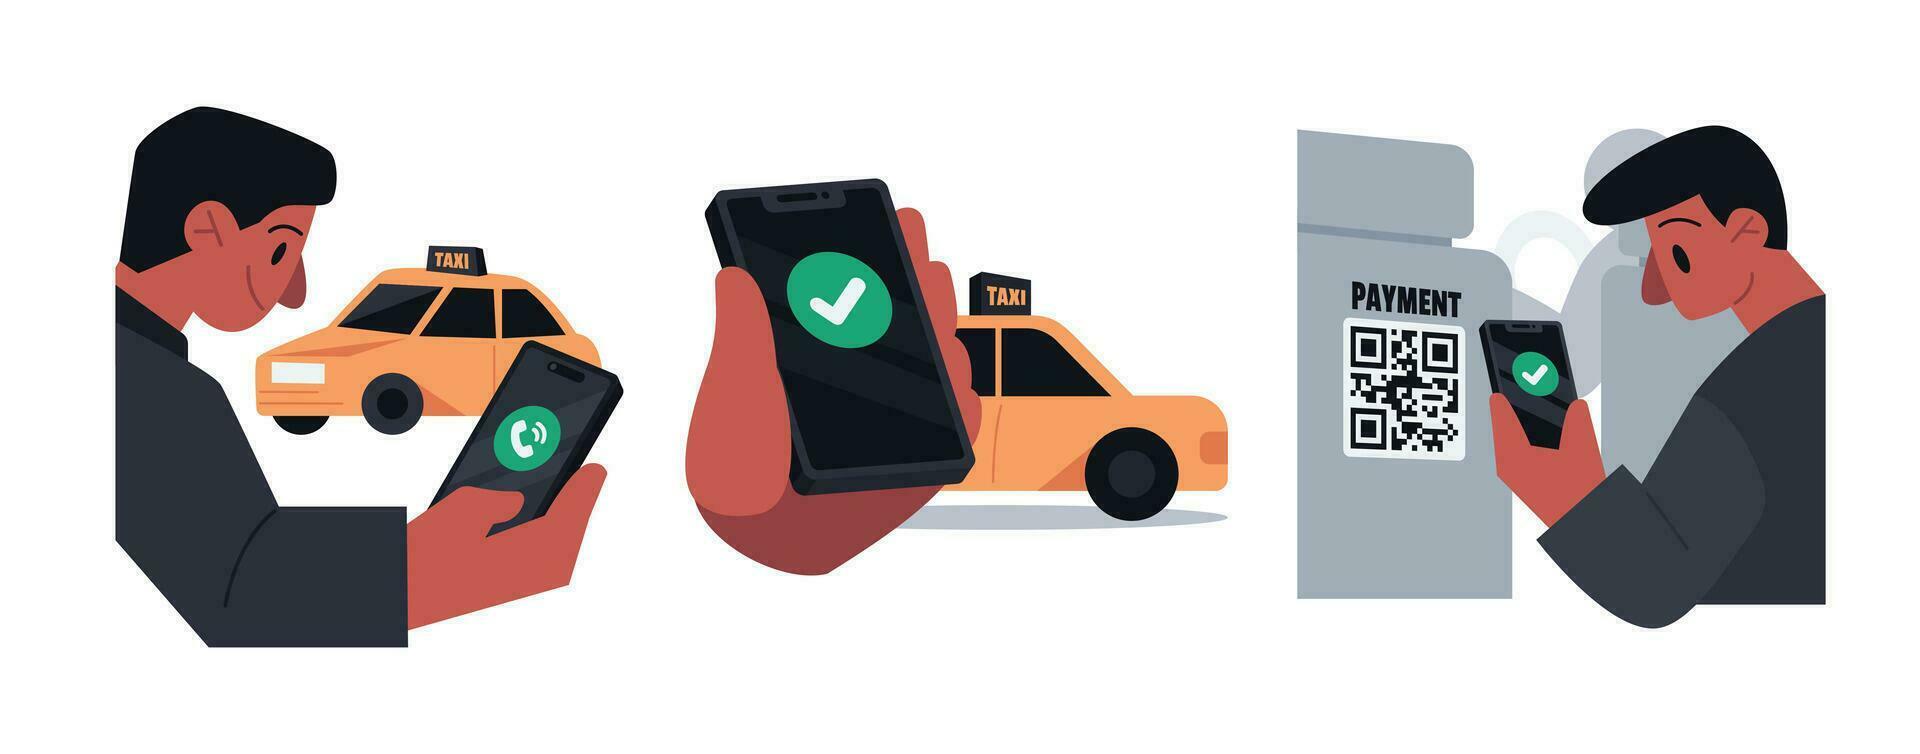 taxi betalingen contactloos betaling vector illustratie reeks